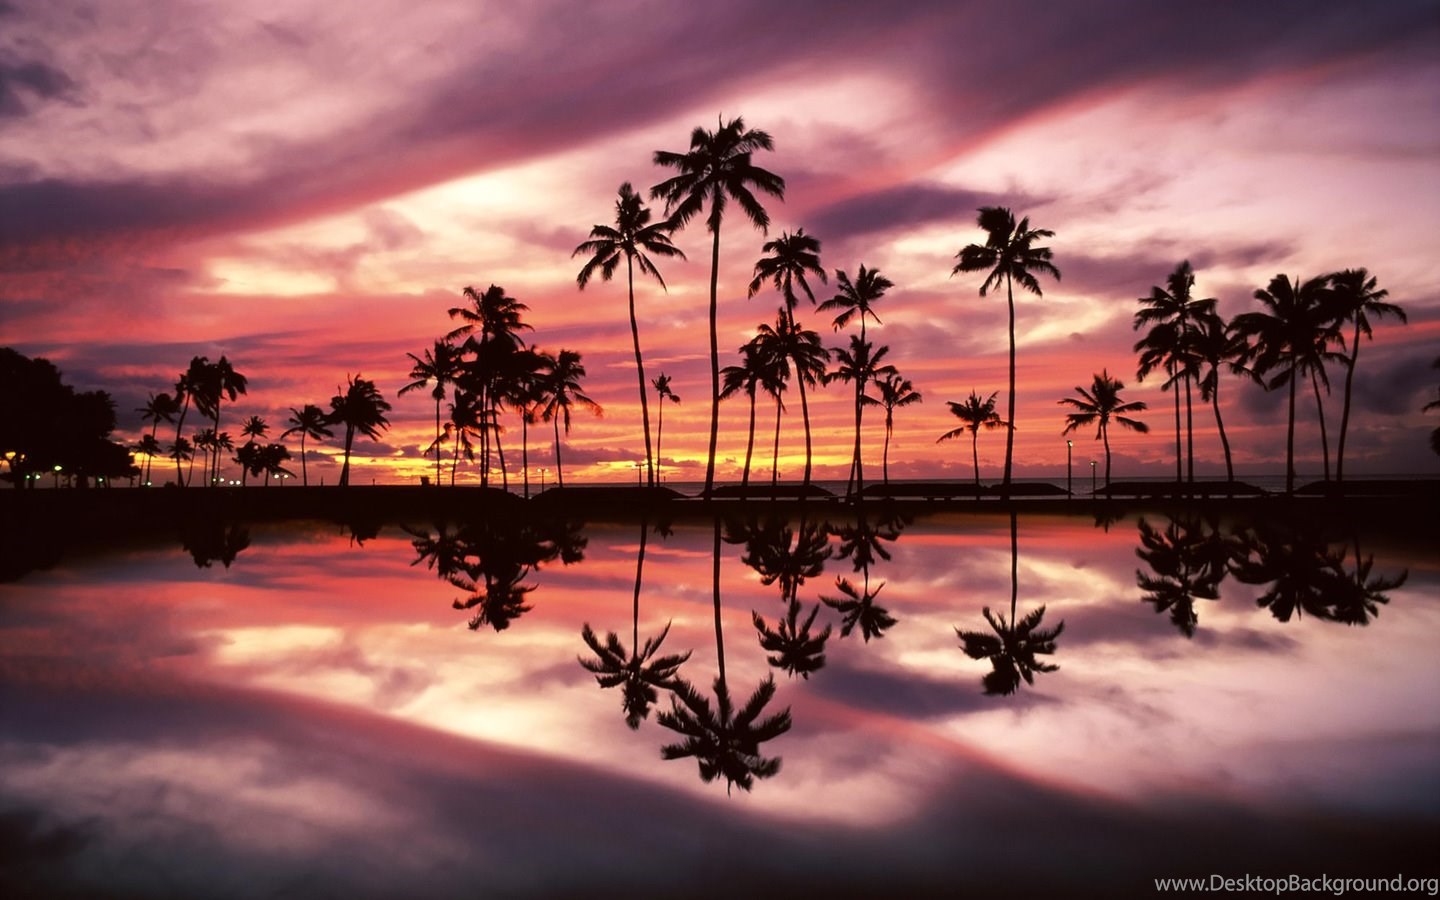 Macbook Wallpaper Hd - Bali Beach Sunset , HD Wallpaper & Backgrounds